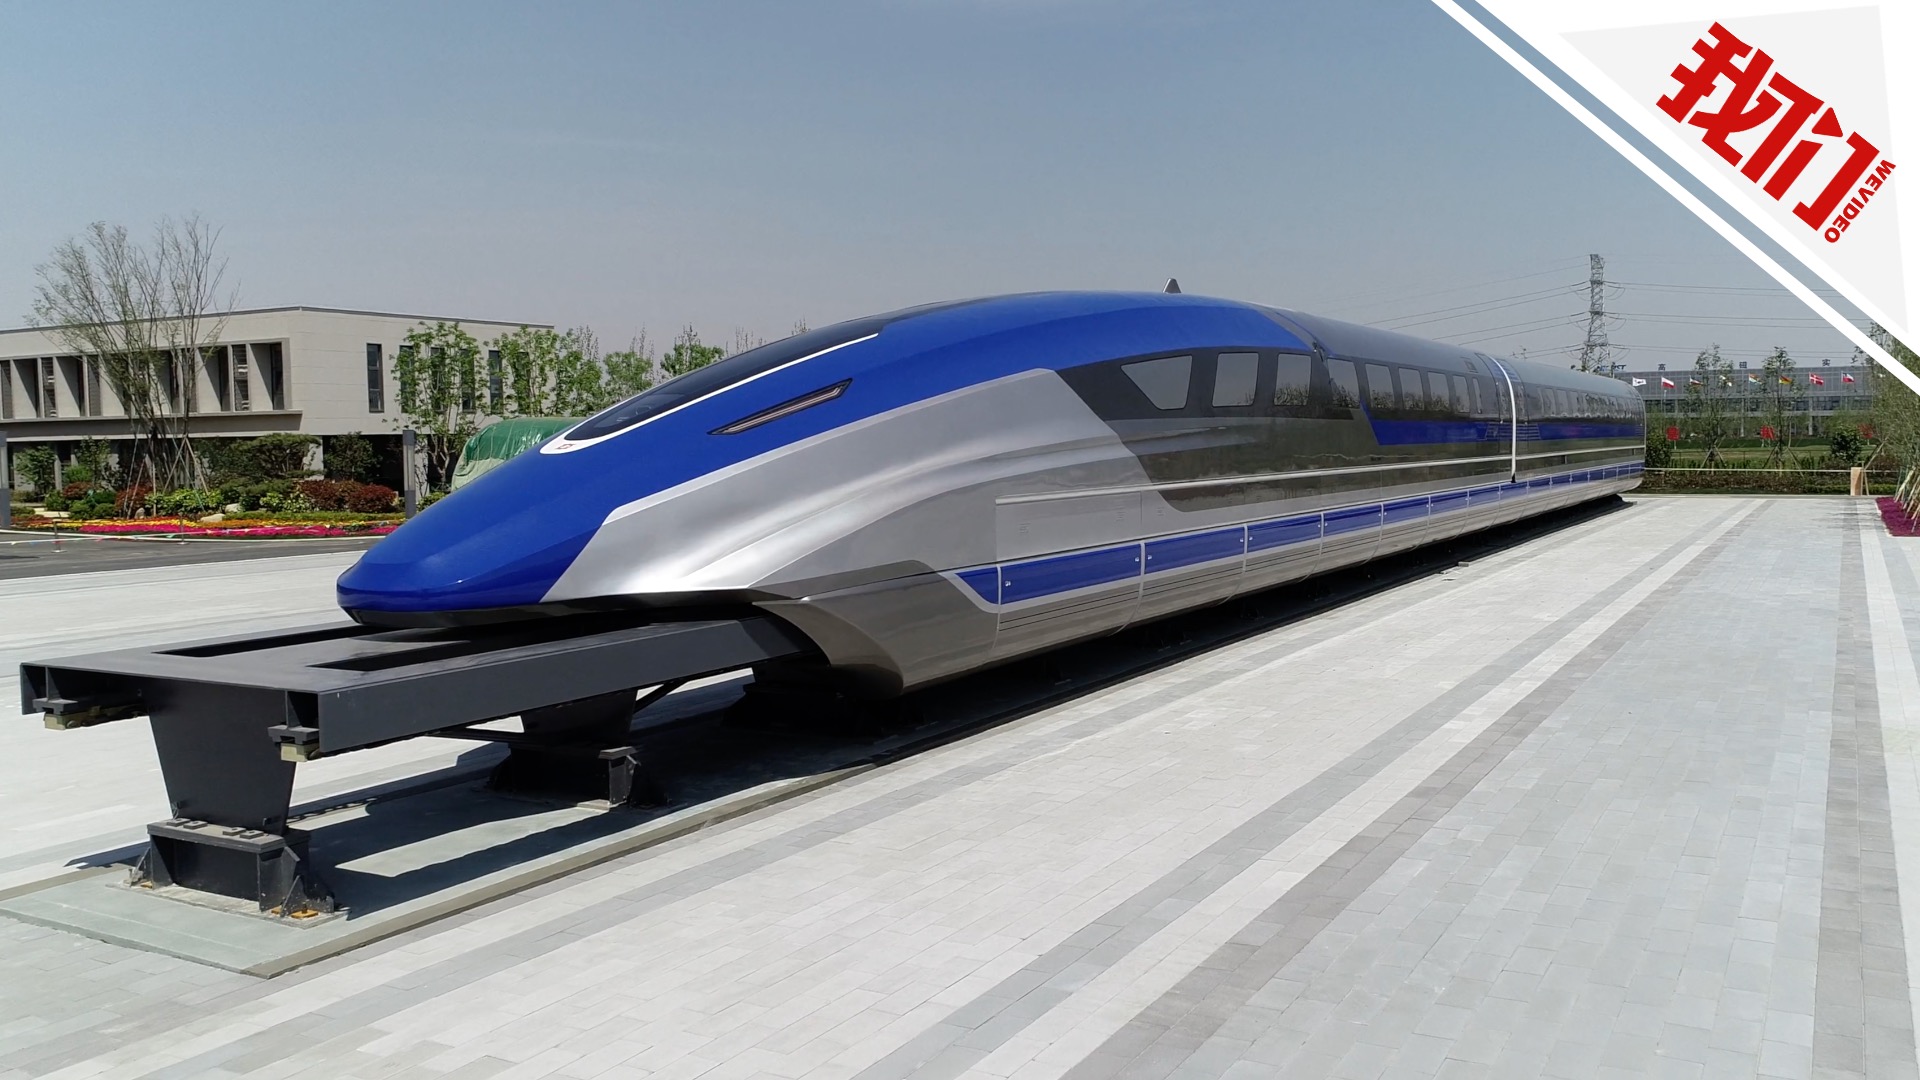 【2020 红点奖】Transport System Bögl (TSB) / 磁悬浮列车 - 普象网